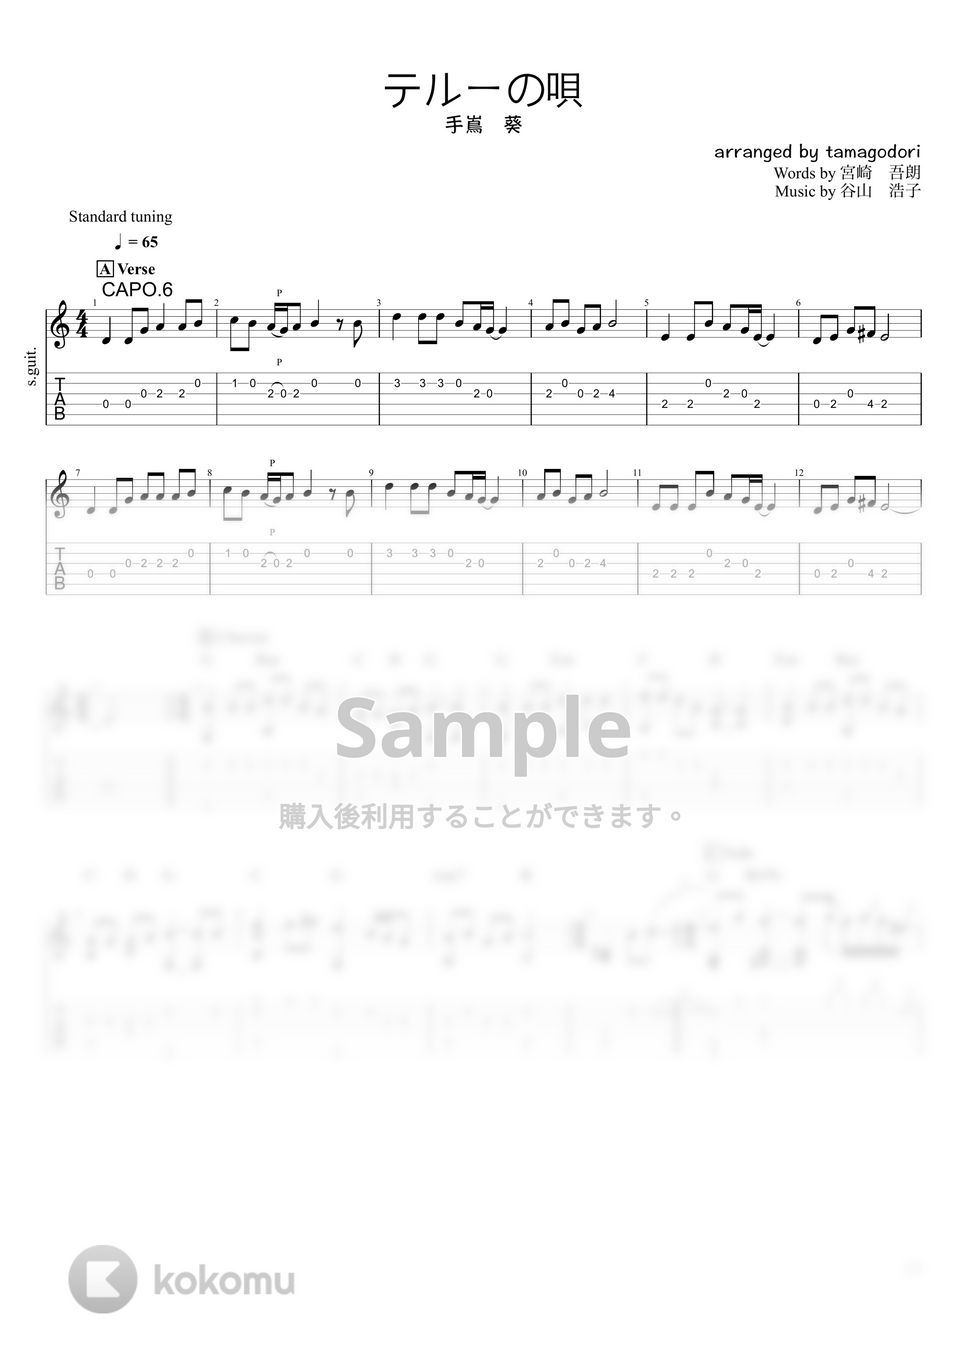 ゲド戦記 - テルーの唄 (ソロギター) by たまごどり